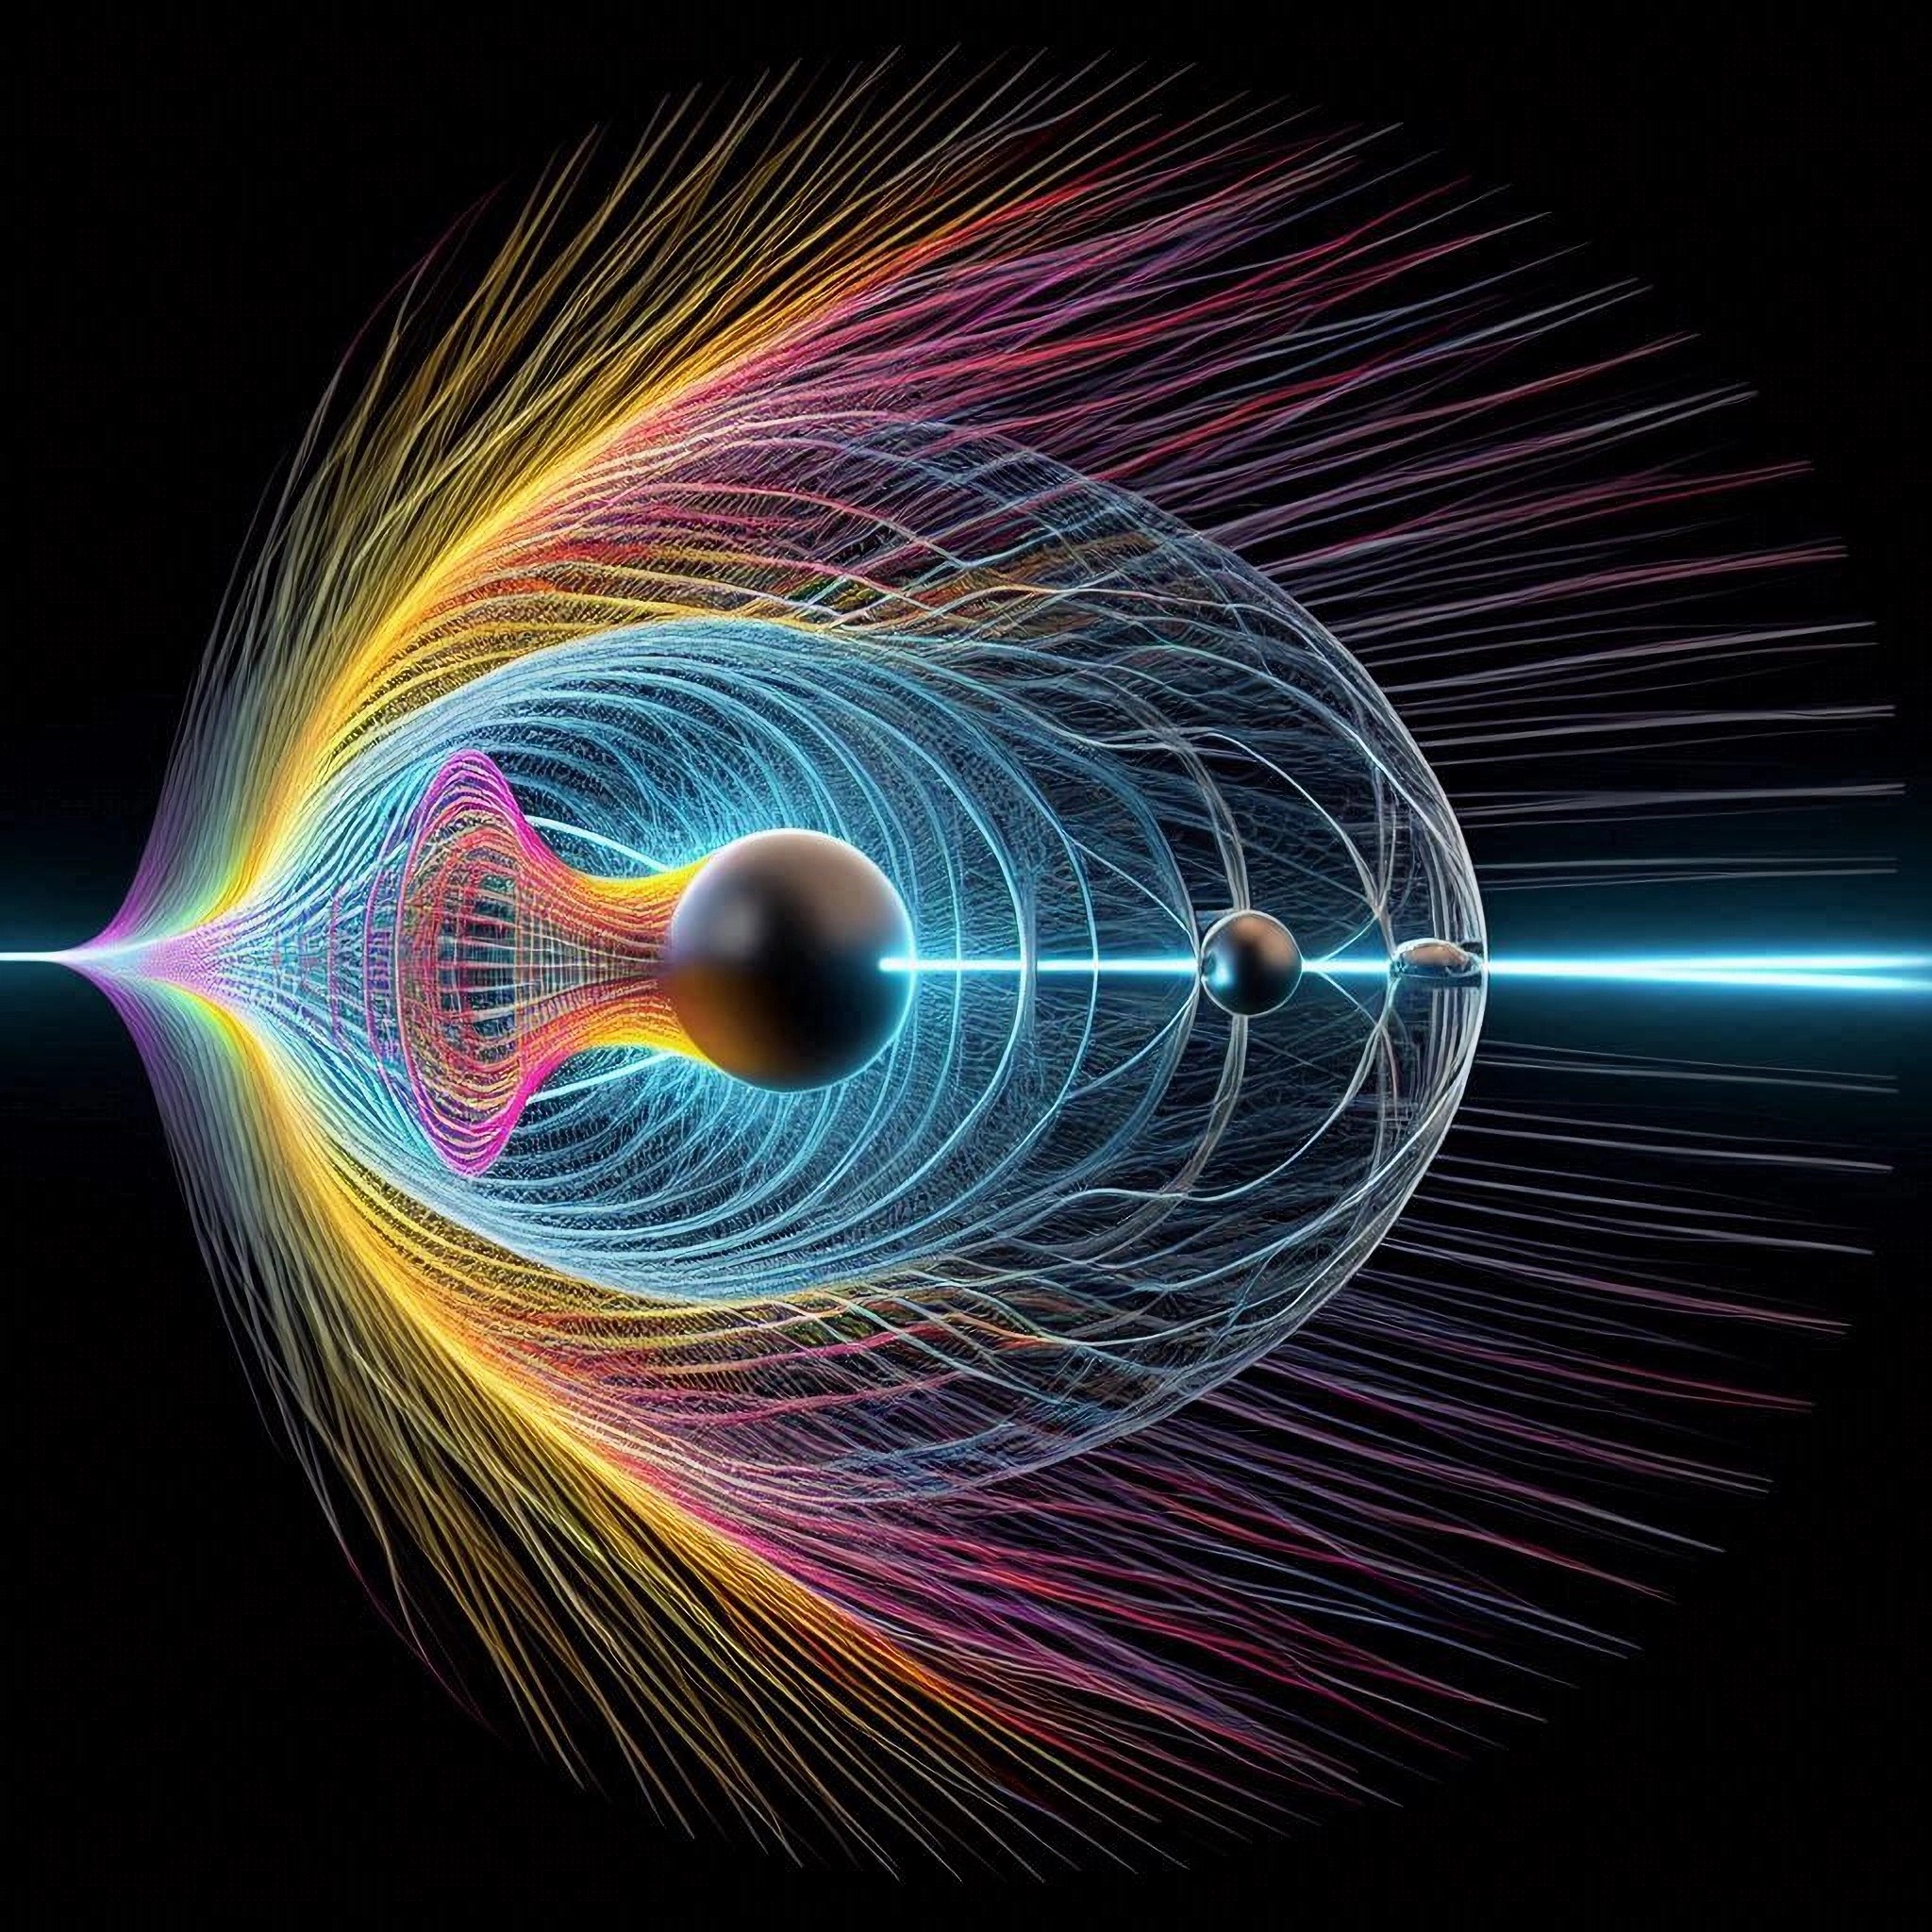 Быстрее скорости света: тахион оказался совместимым с теорией относительности Эйнштейна